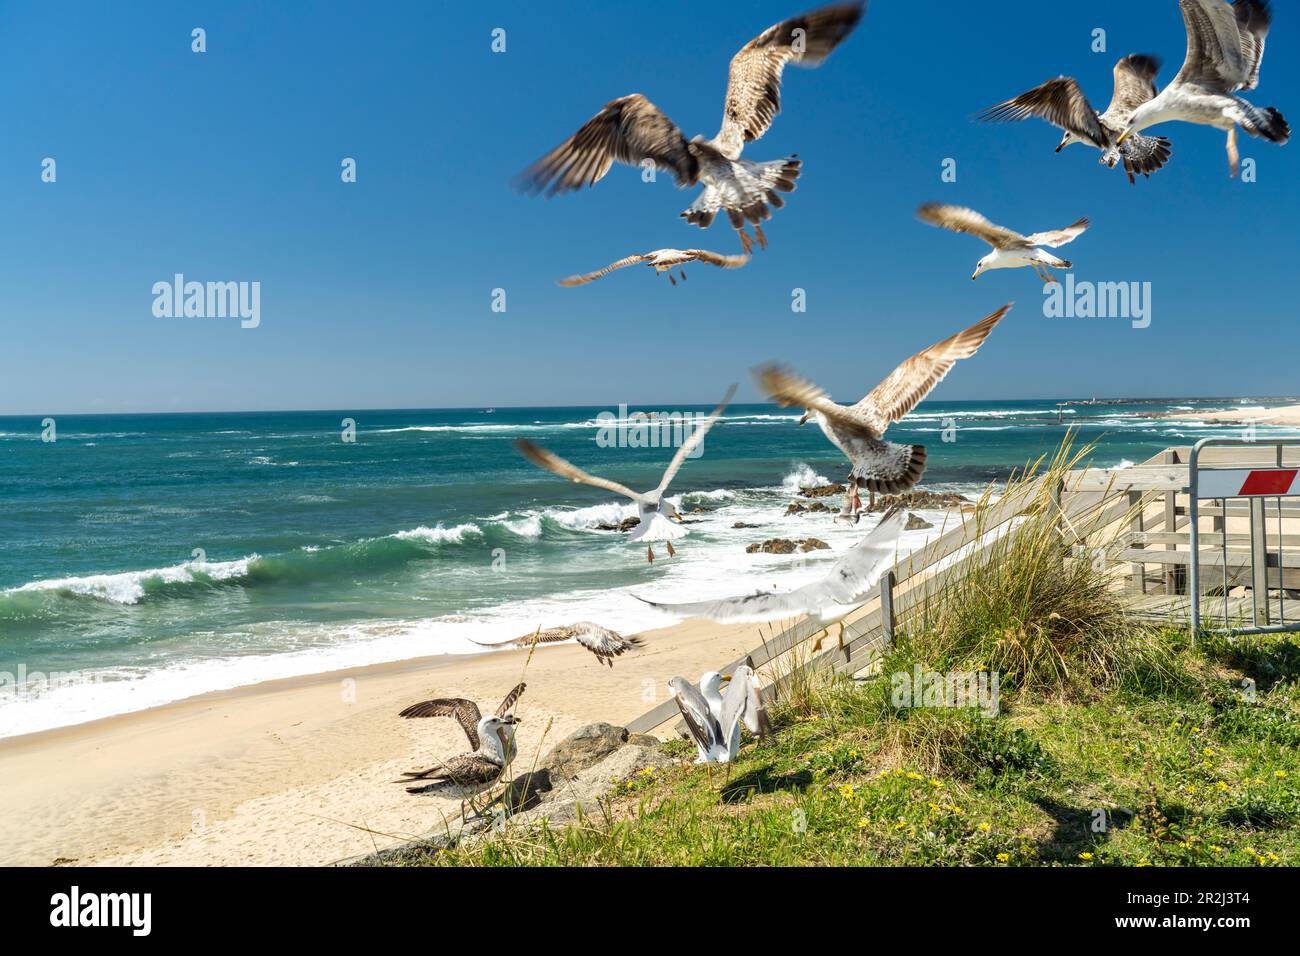 Seagulls on Praia das Caxinas beach, Vila do Conde, Portugal, Europe Stock Photo